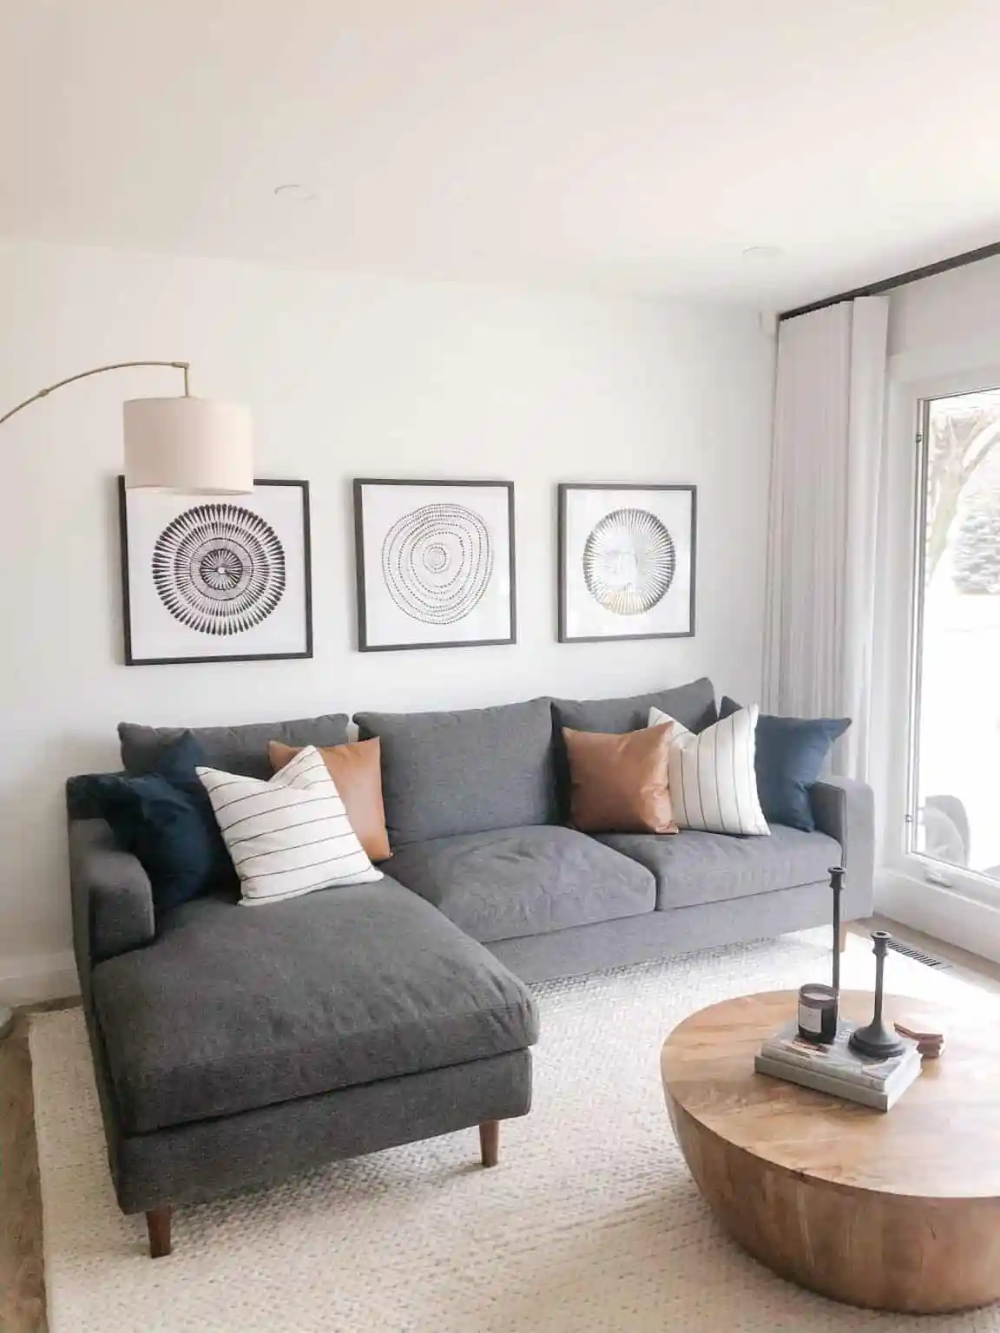 Comfy Living Room with a Plain Design